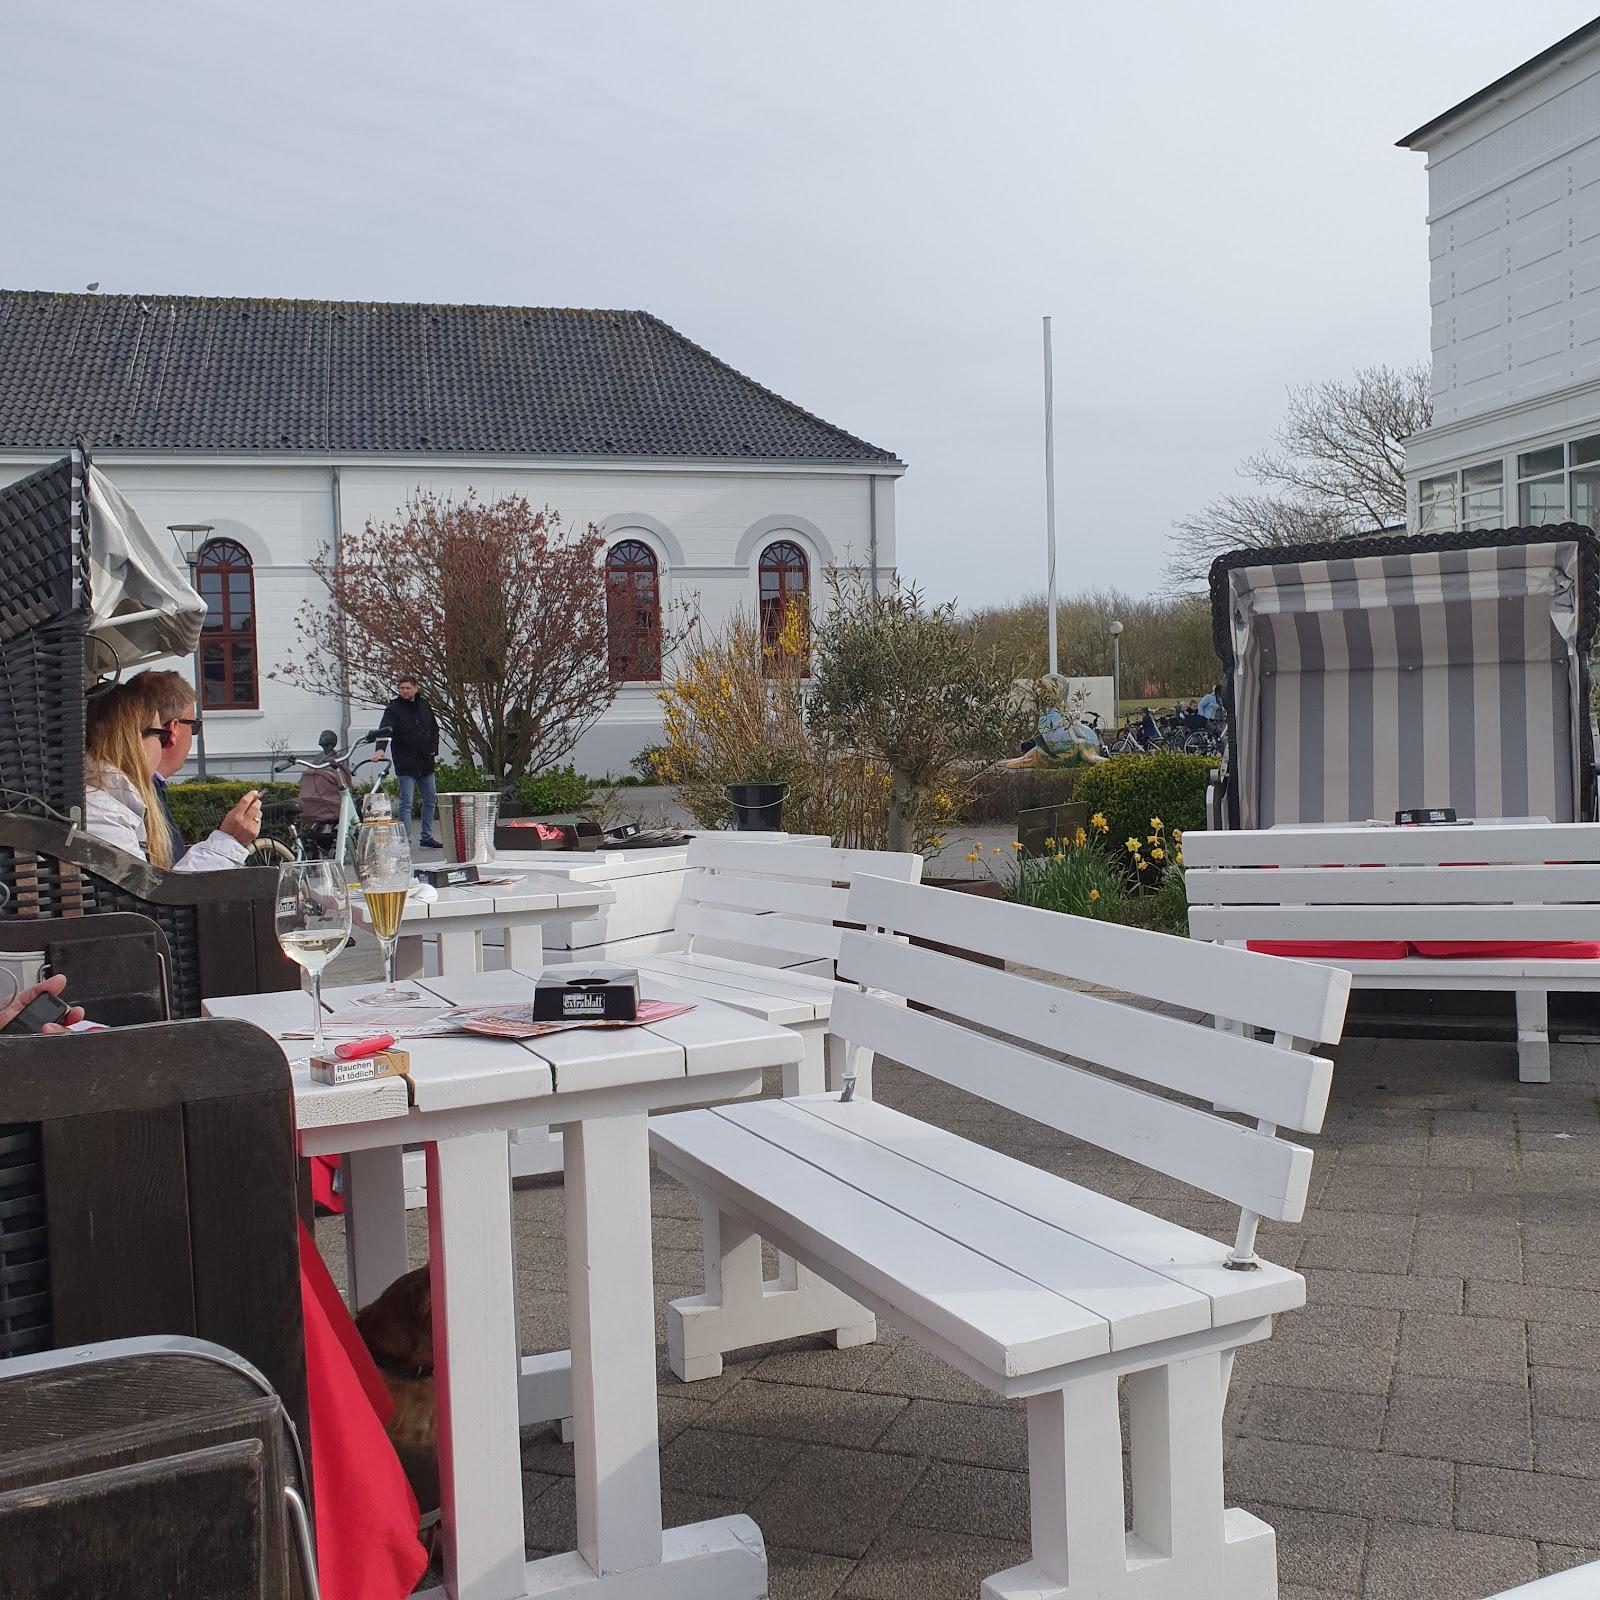 Restaurant "Cafe Extrablatt" in Norderney